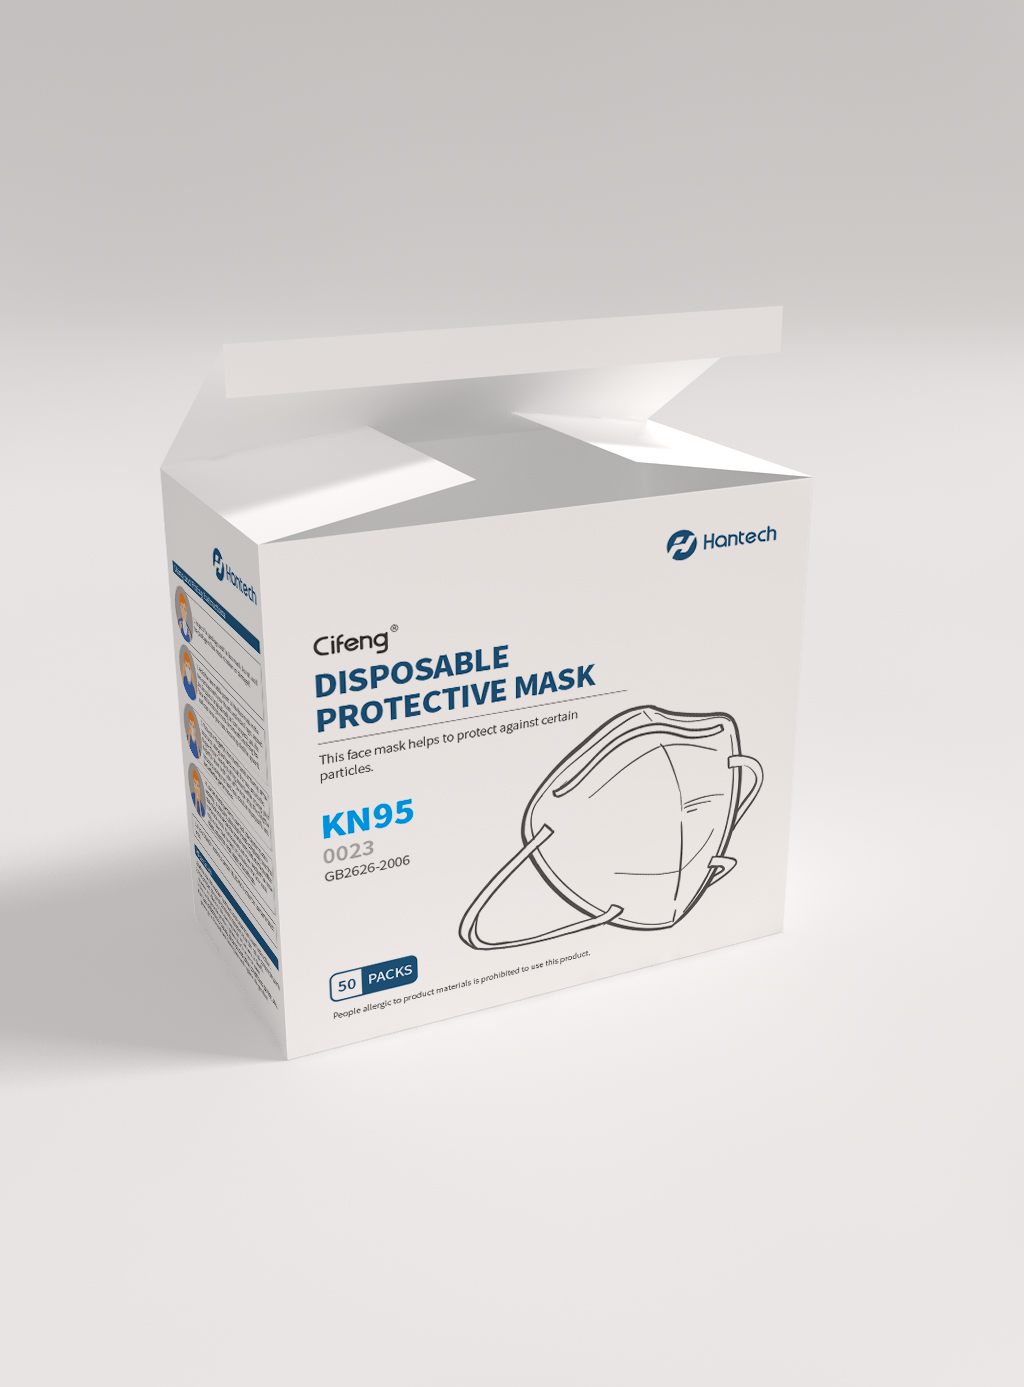 KN95口罩外包装盒设计、内包装盒设计、一次性口罩外包装盒设计、内包装盒设计